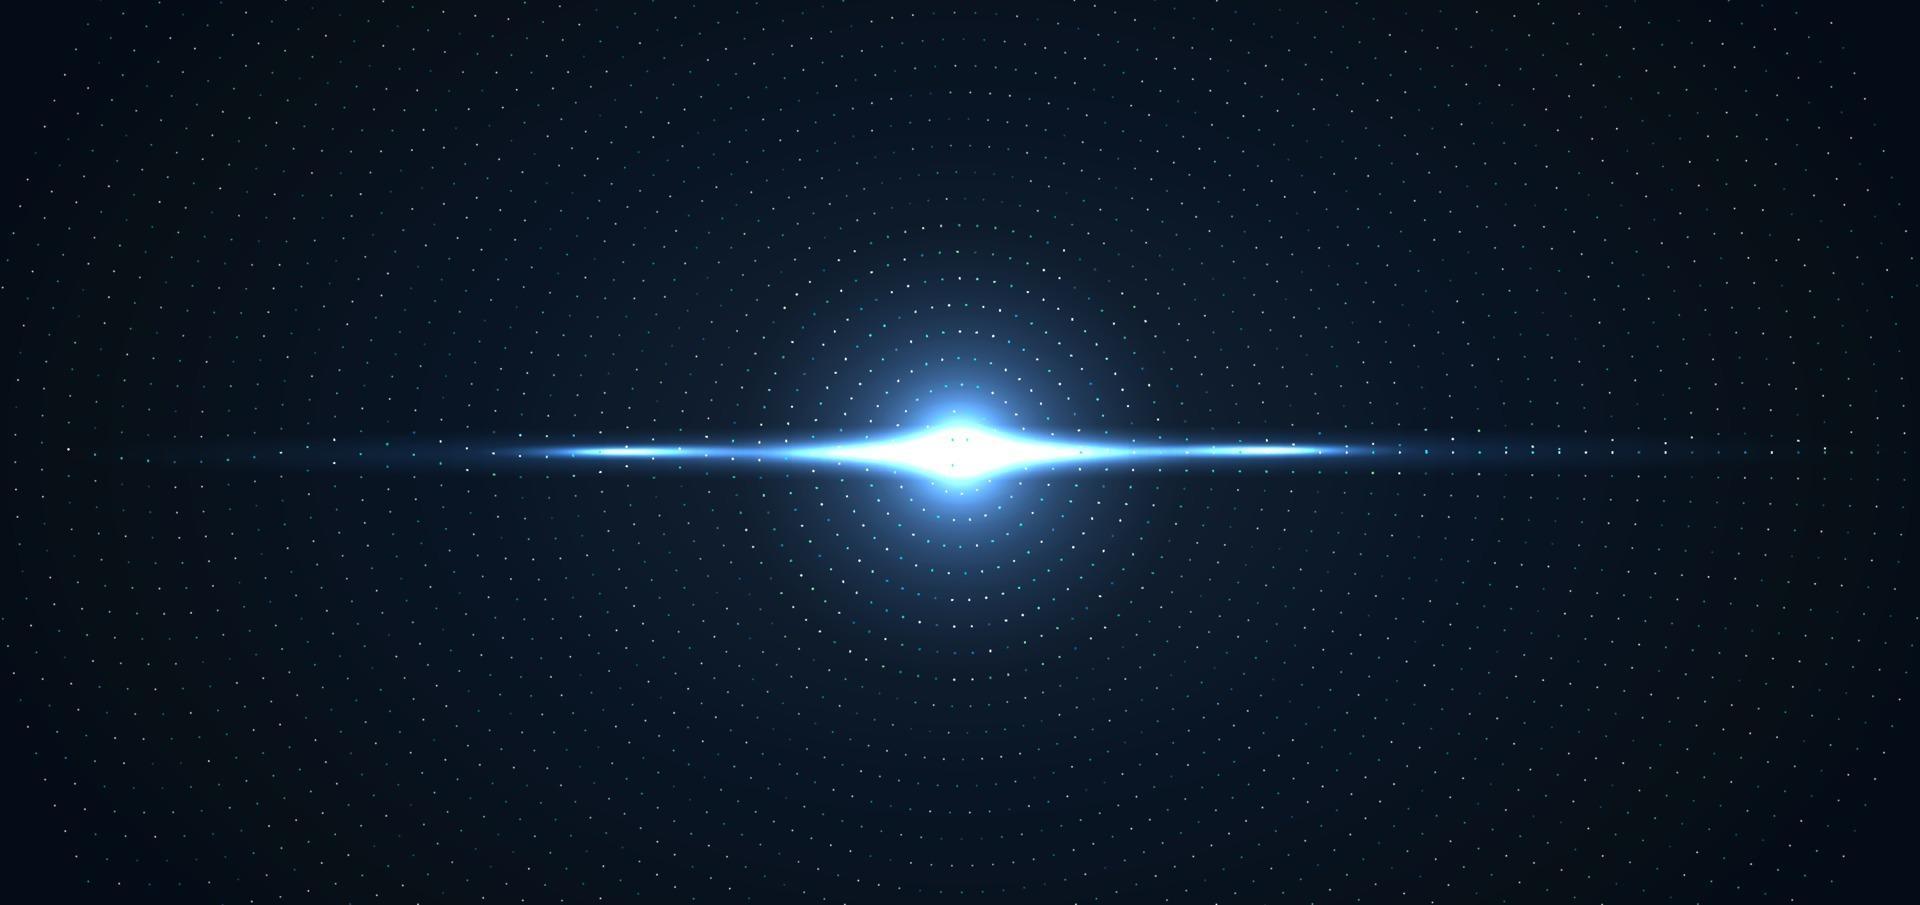 tecnologia abstrata futurista conceito digital efeito de iluminação partículas brilhantes círculo de elementos de pontos em fundo azul escuro vetor